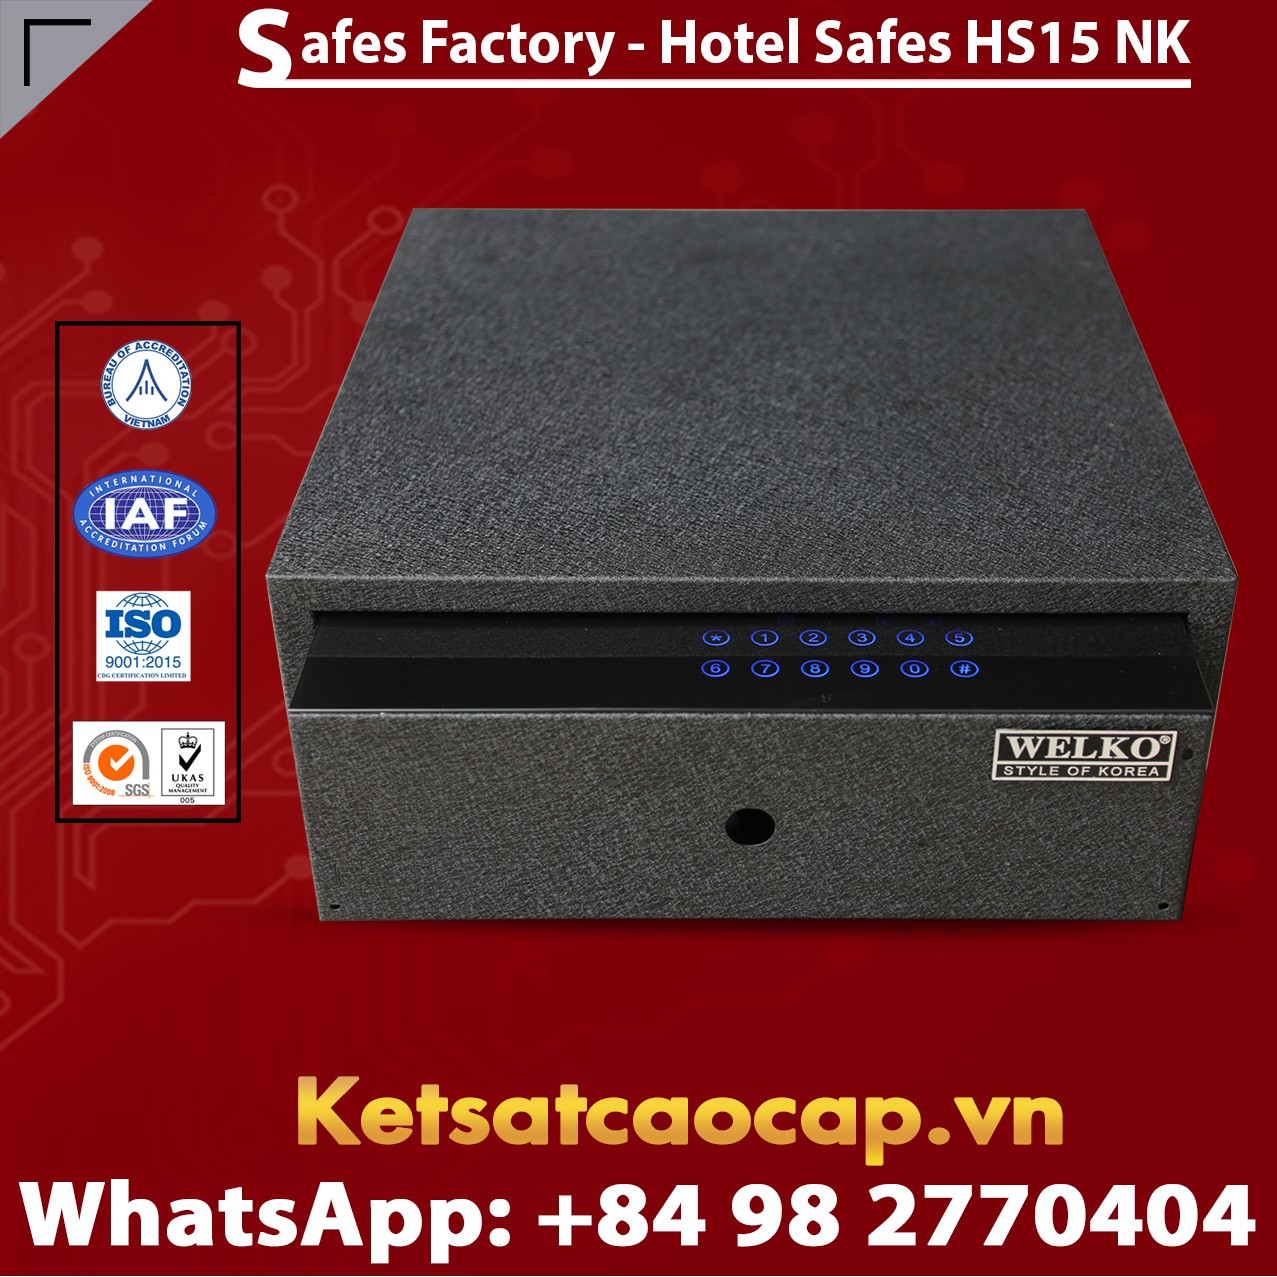 Safe in Hotel WELKO HS15 NK